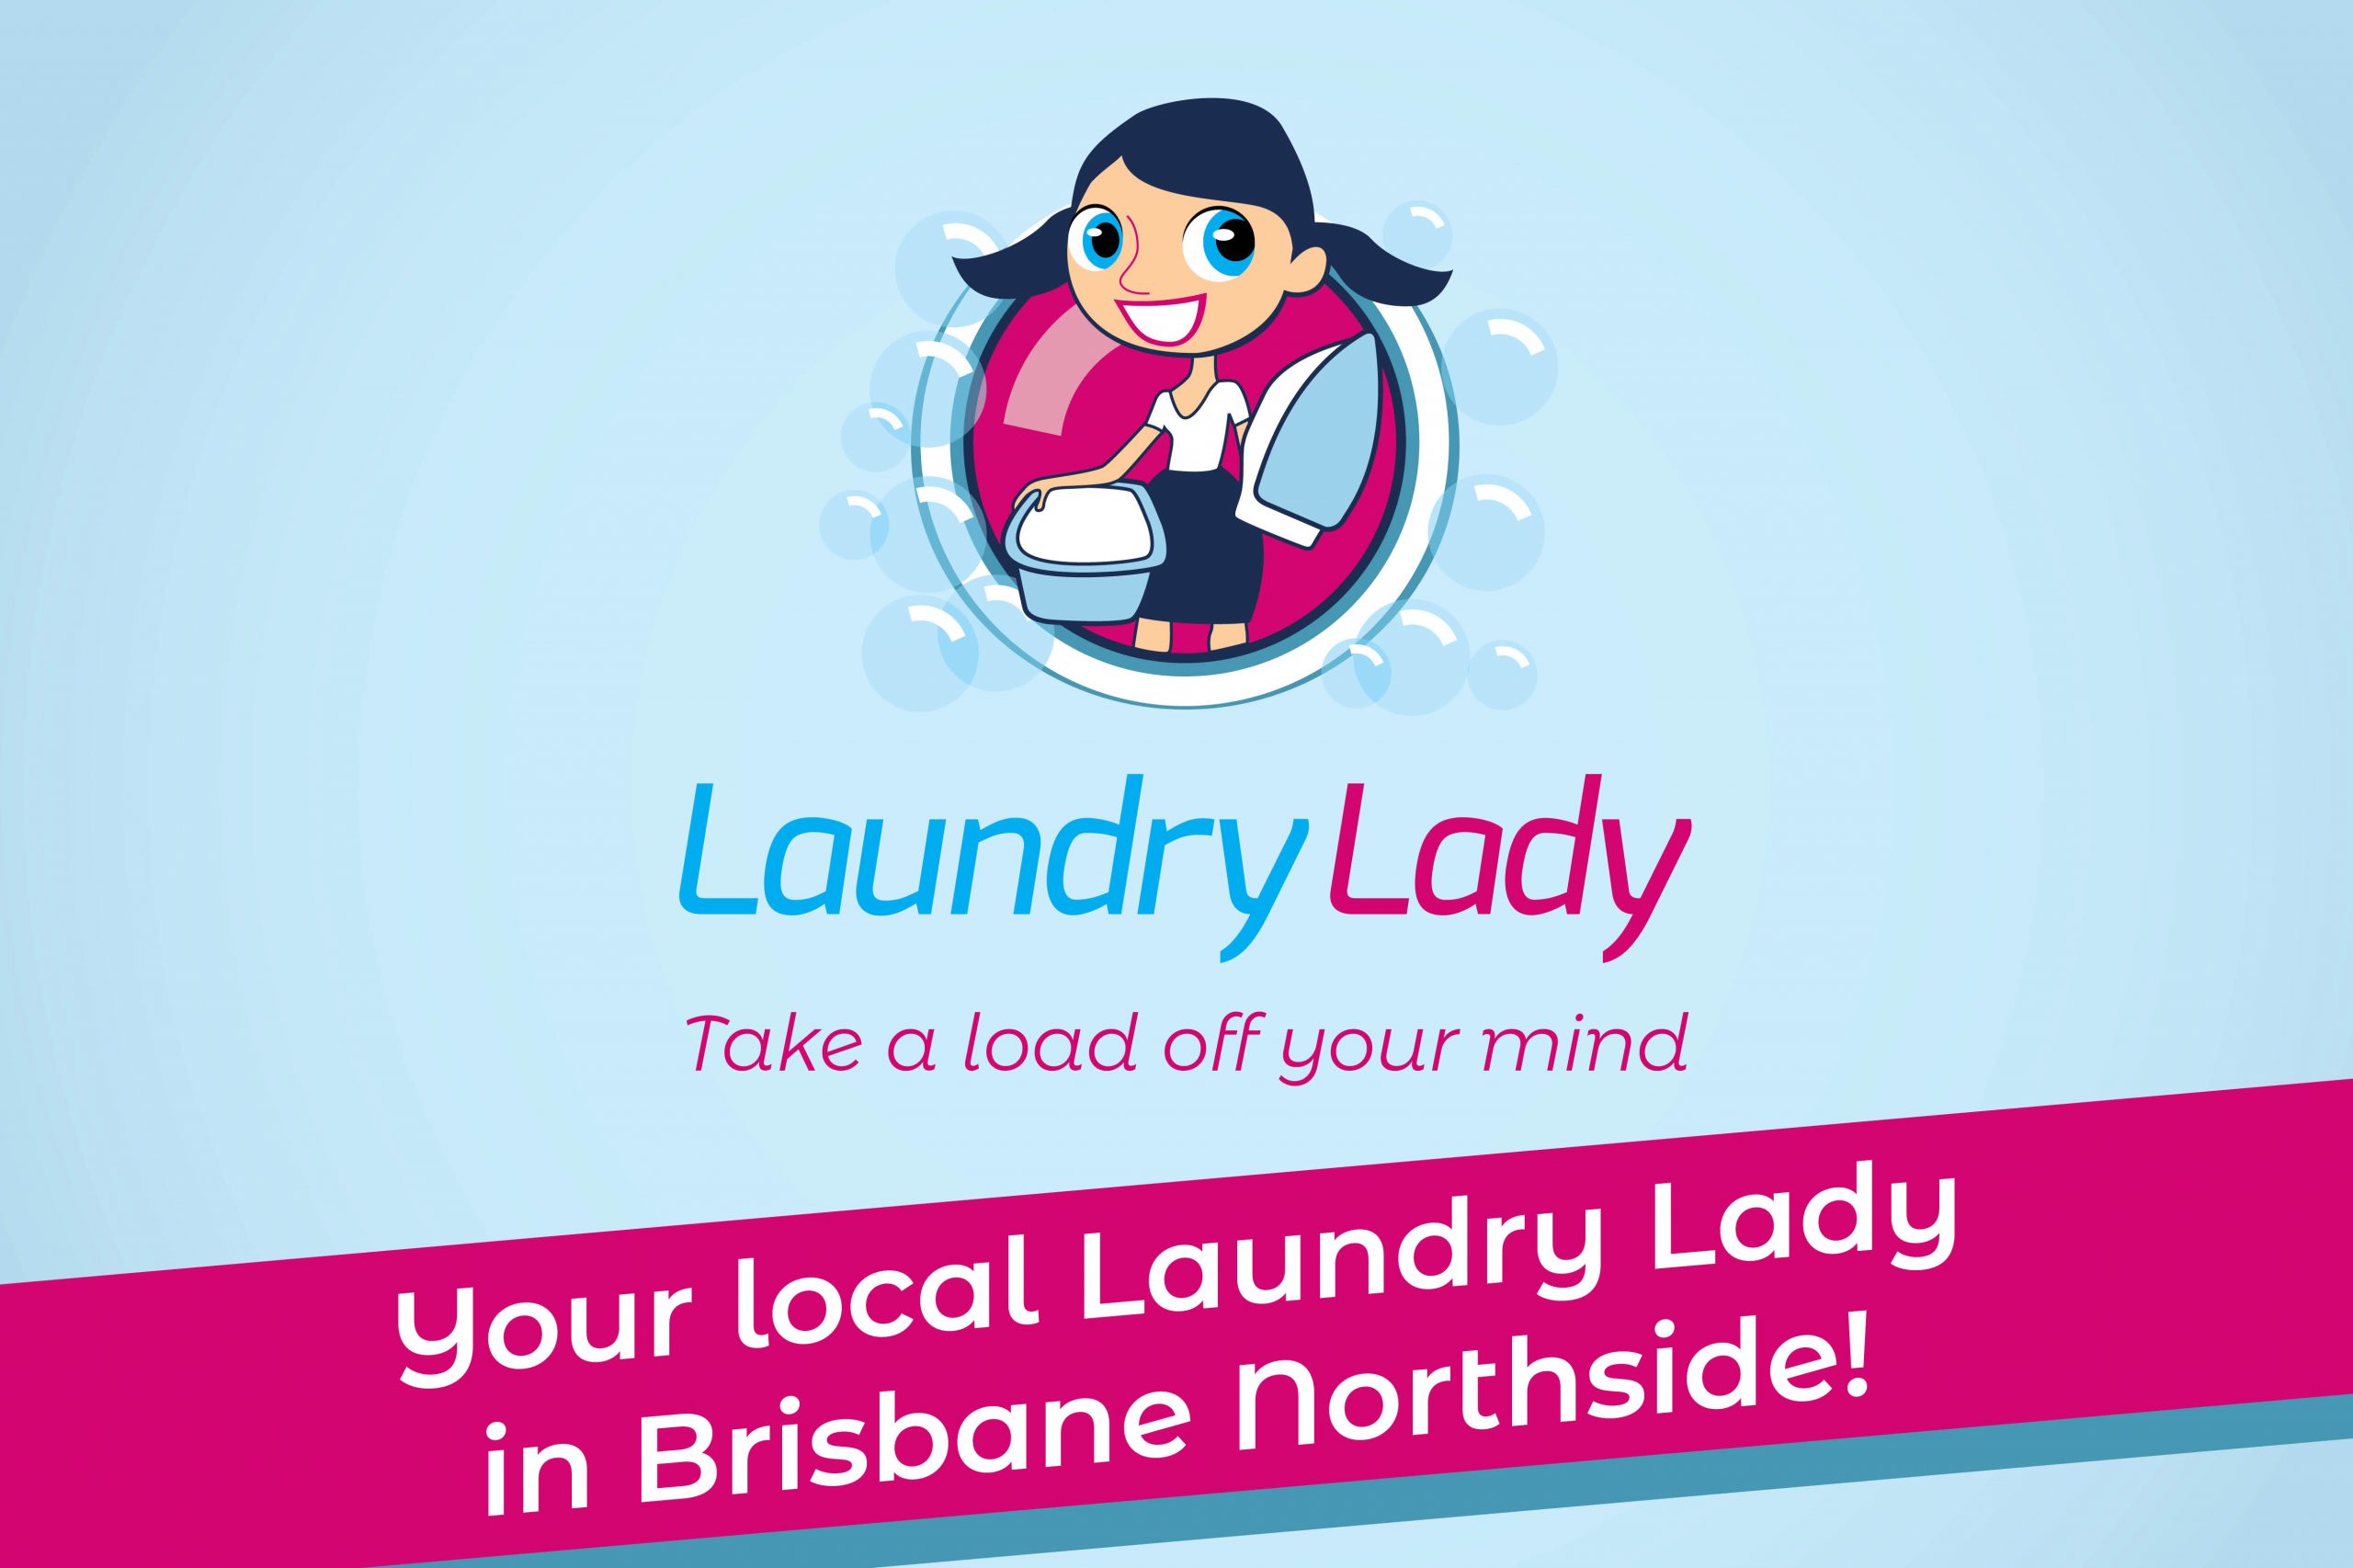 washing and ironing service - laundry service brisbane northside - laundromat near me